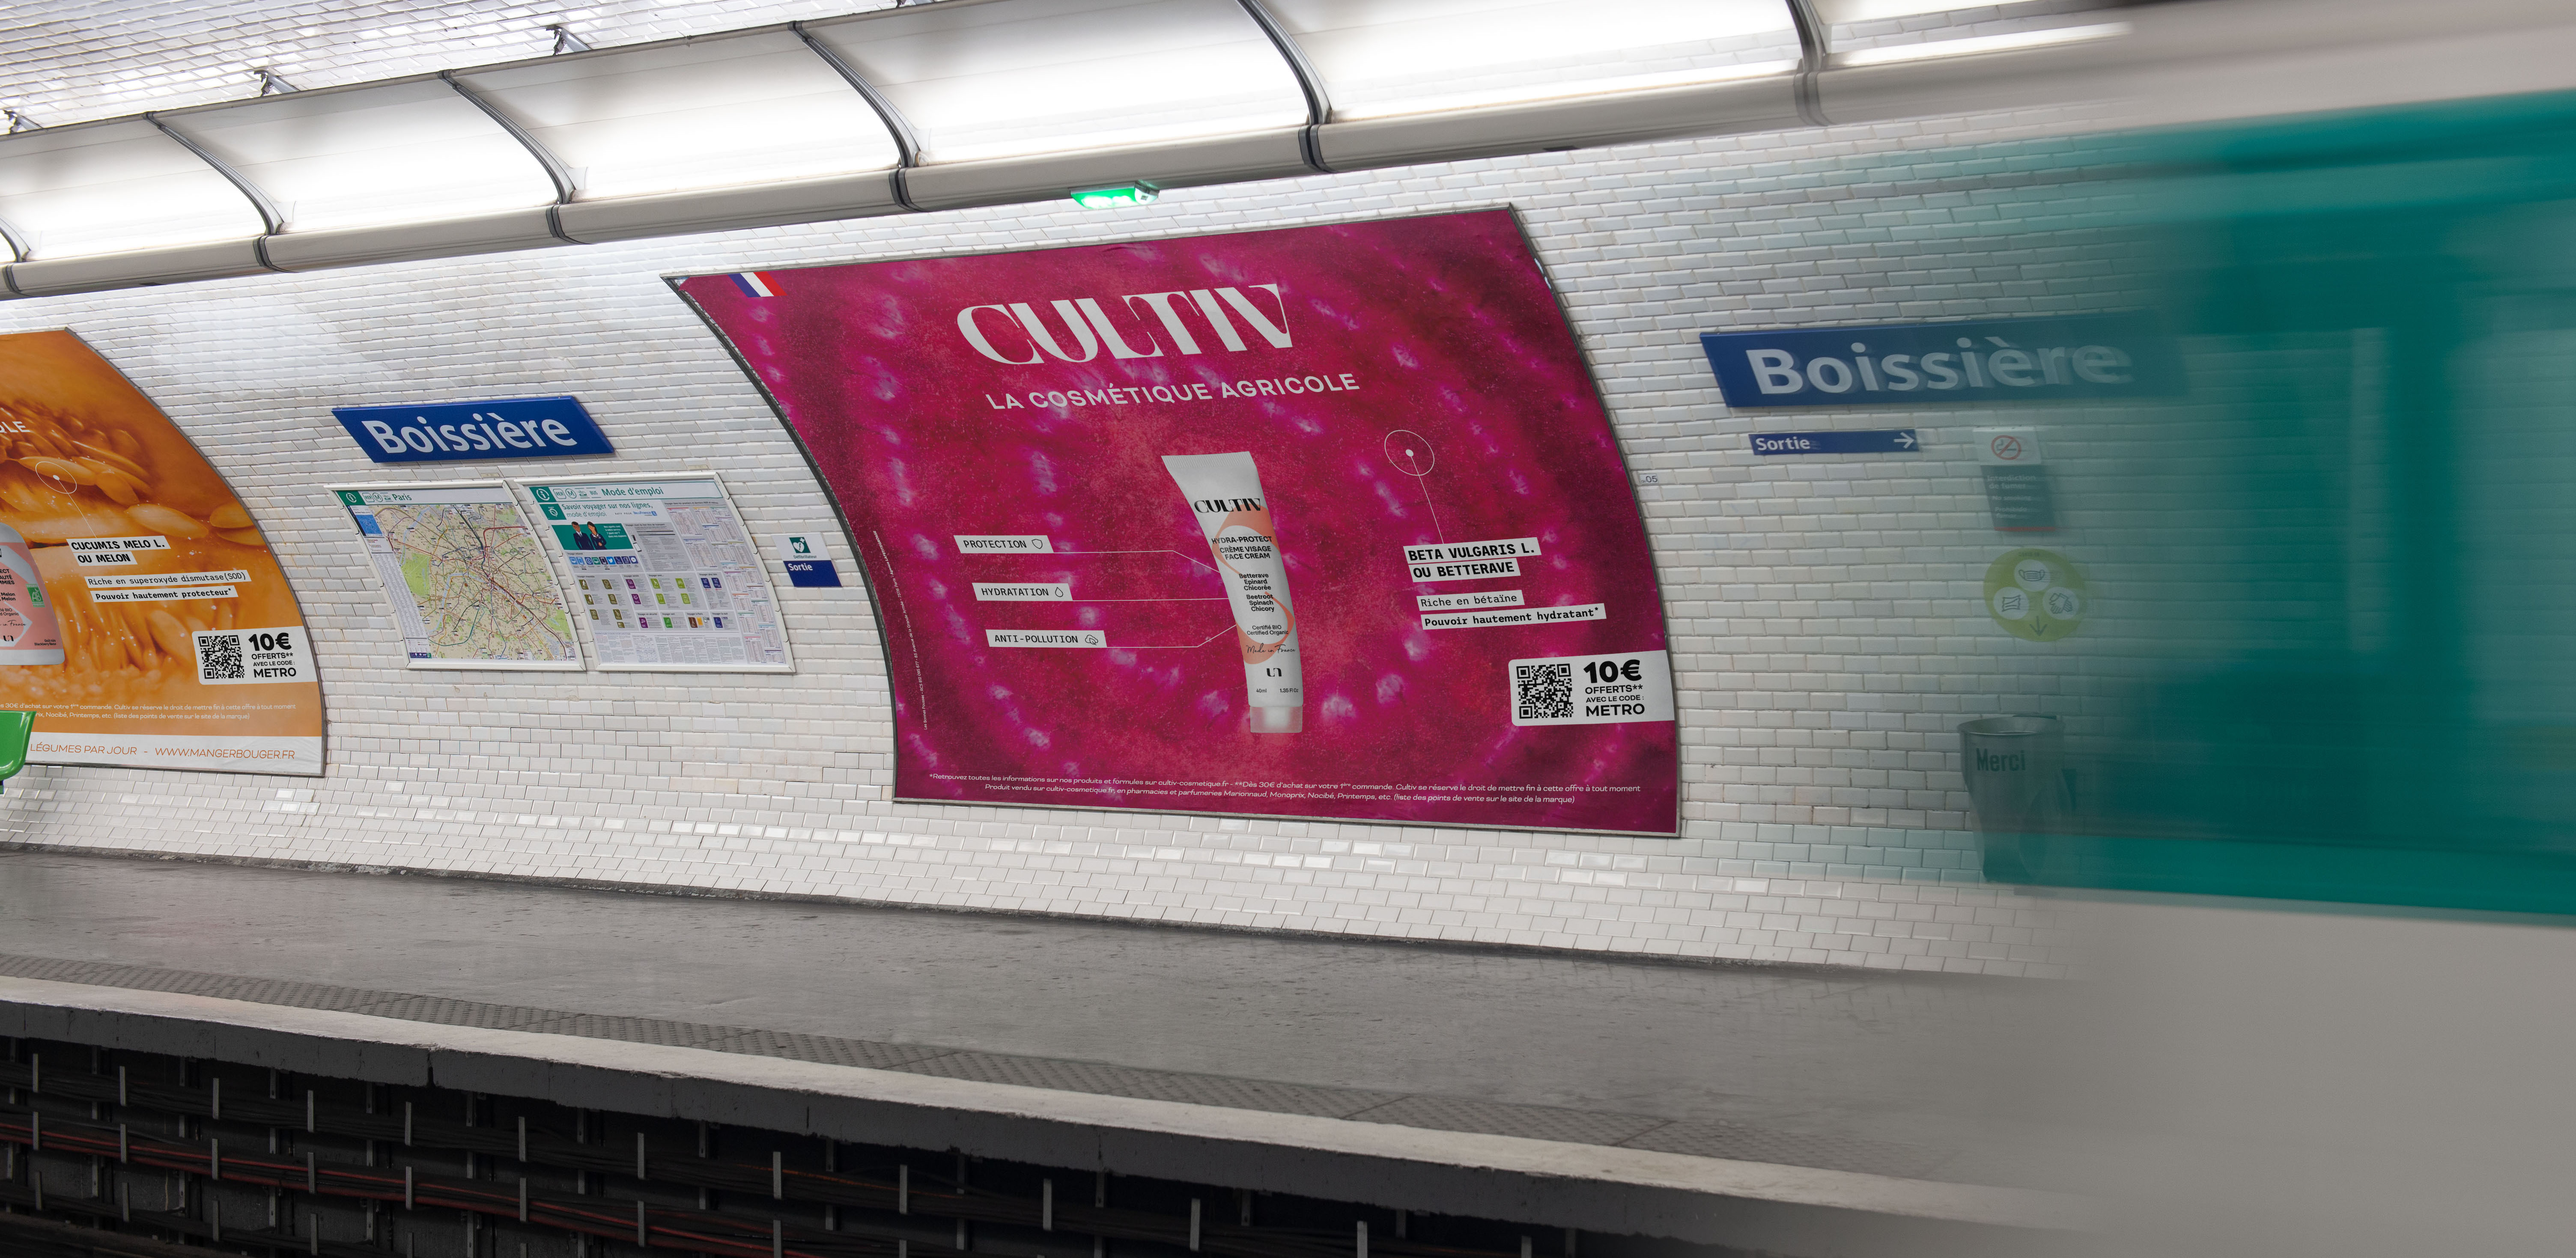 Cultiv cosmétique affichage métro Paris betterave